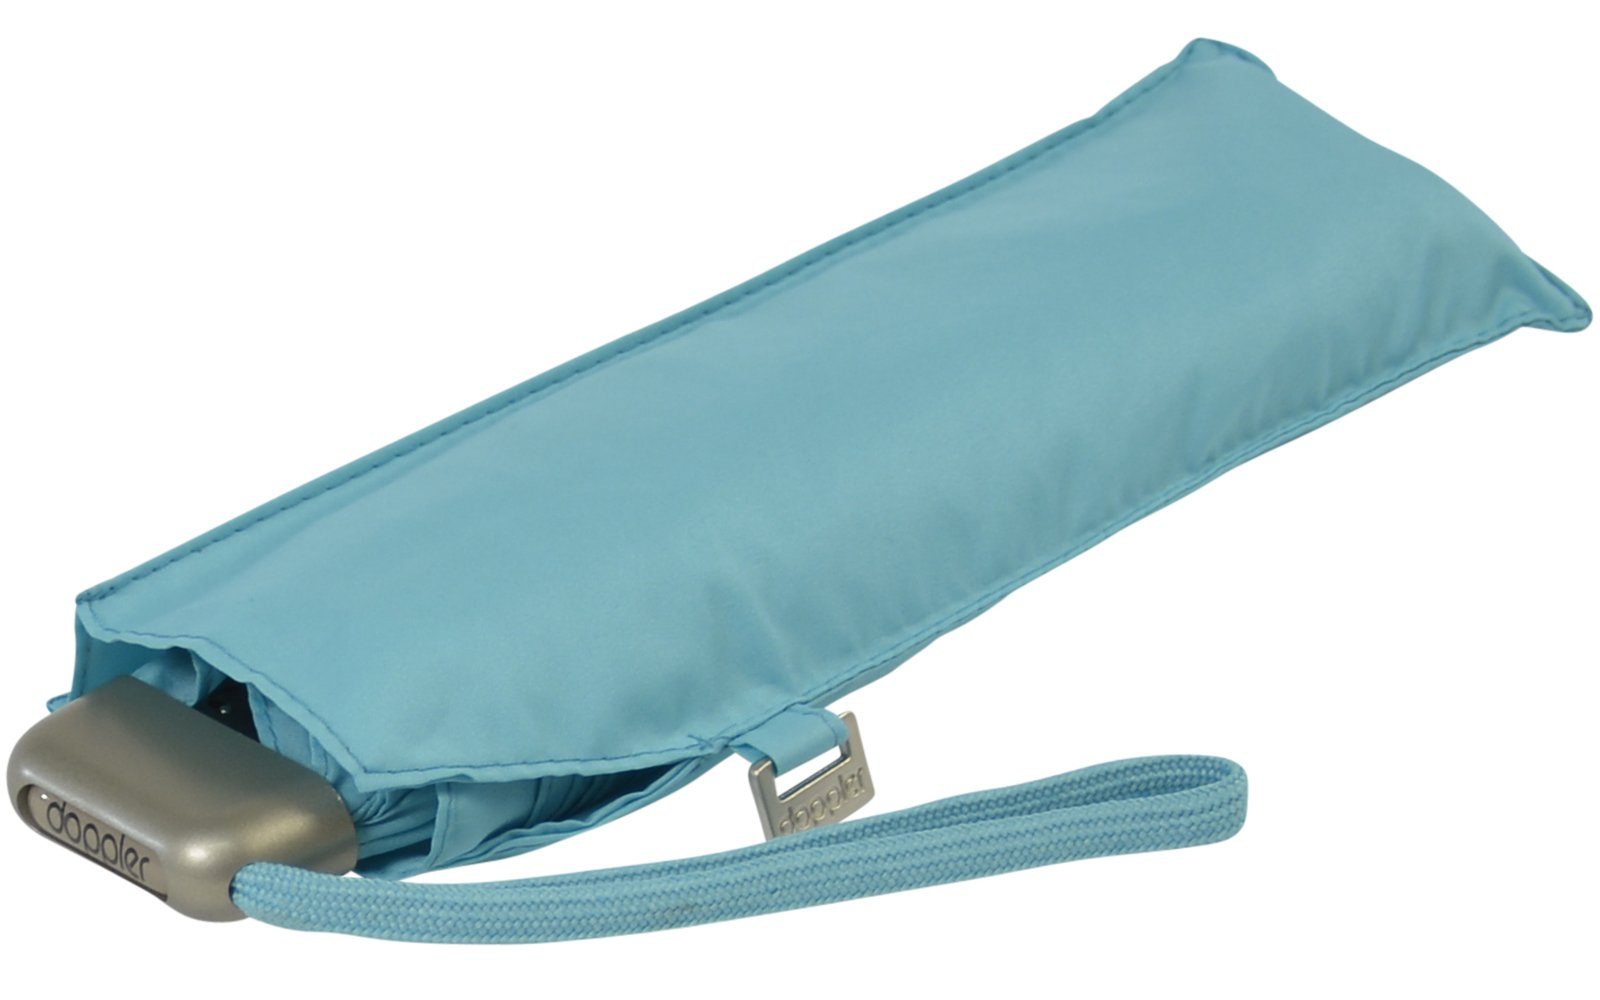 Tasche, für treue jede Begleiter Schirm ein und findet leichter doppler® hellblau dieser flacher Langregenschirm Platz überall